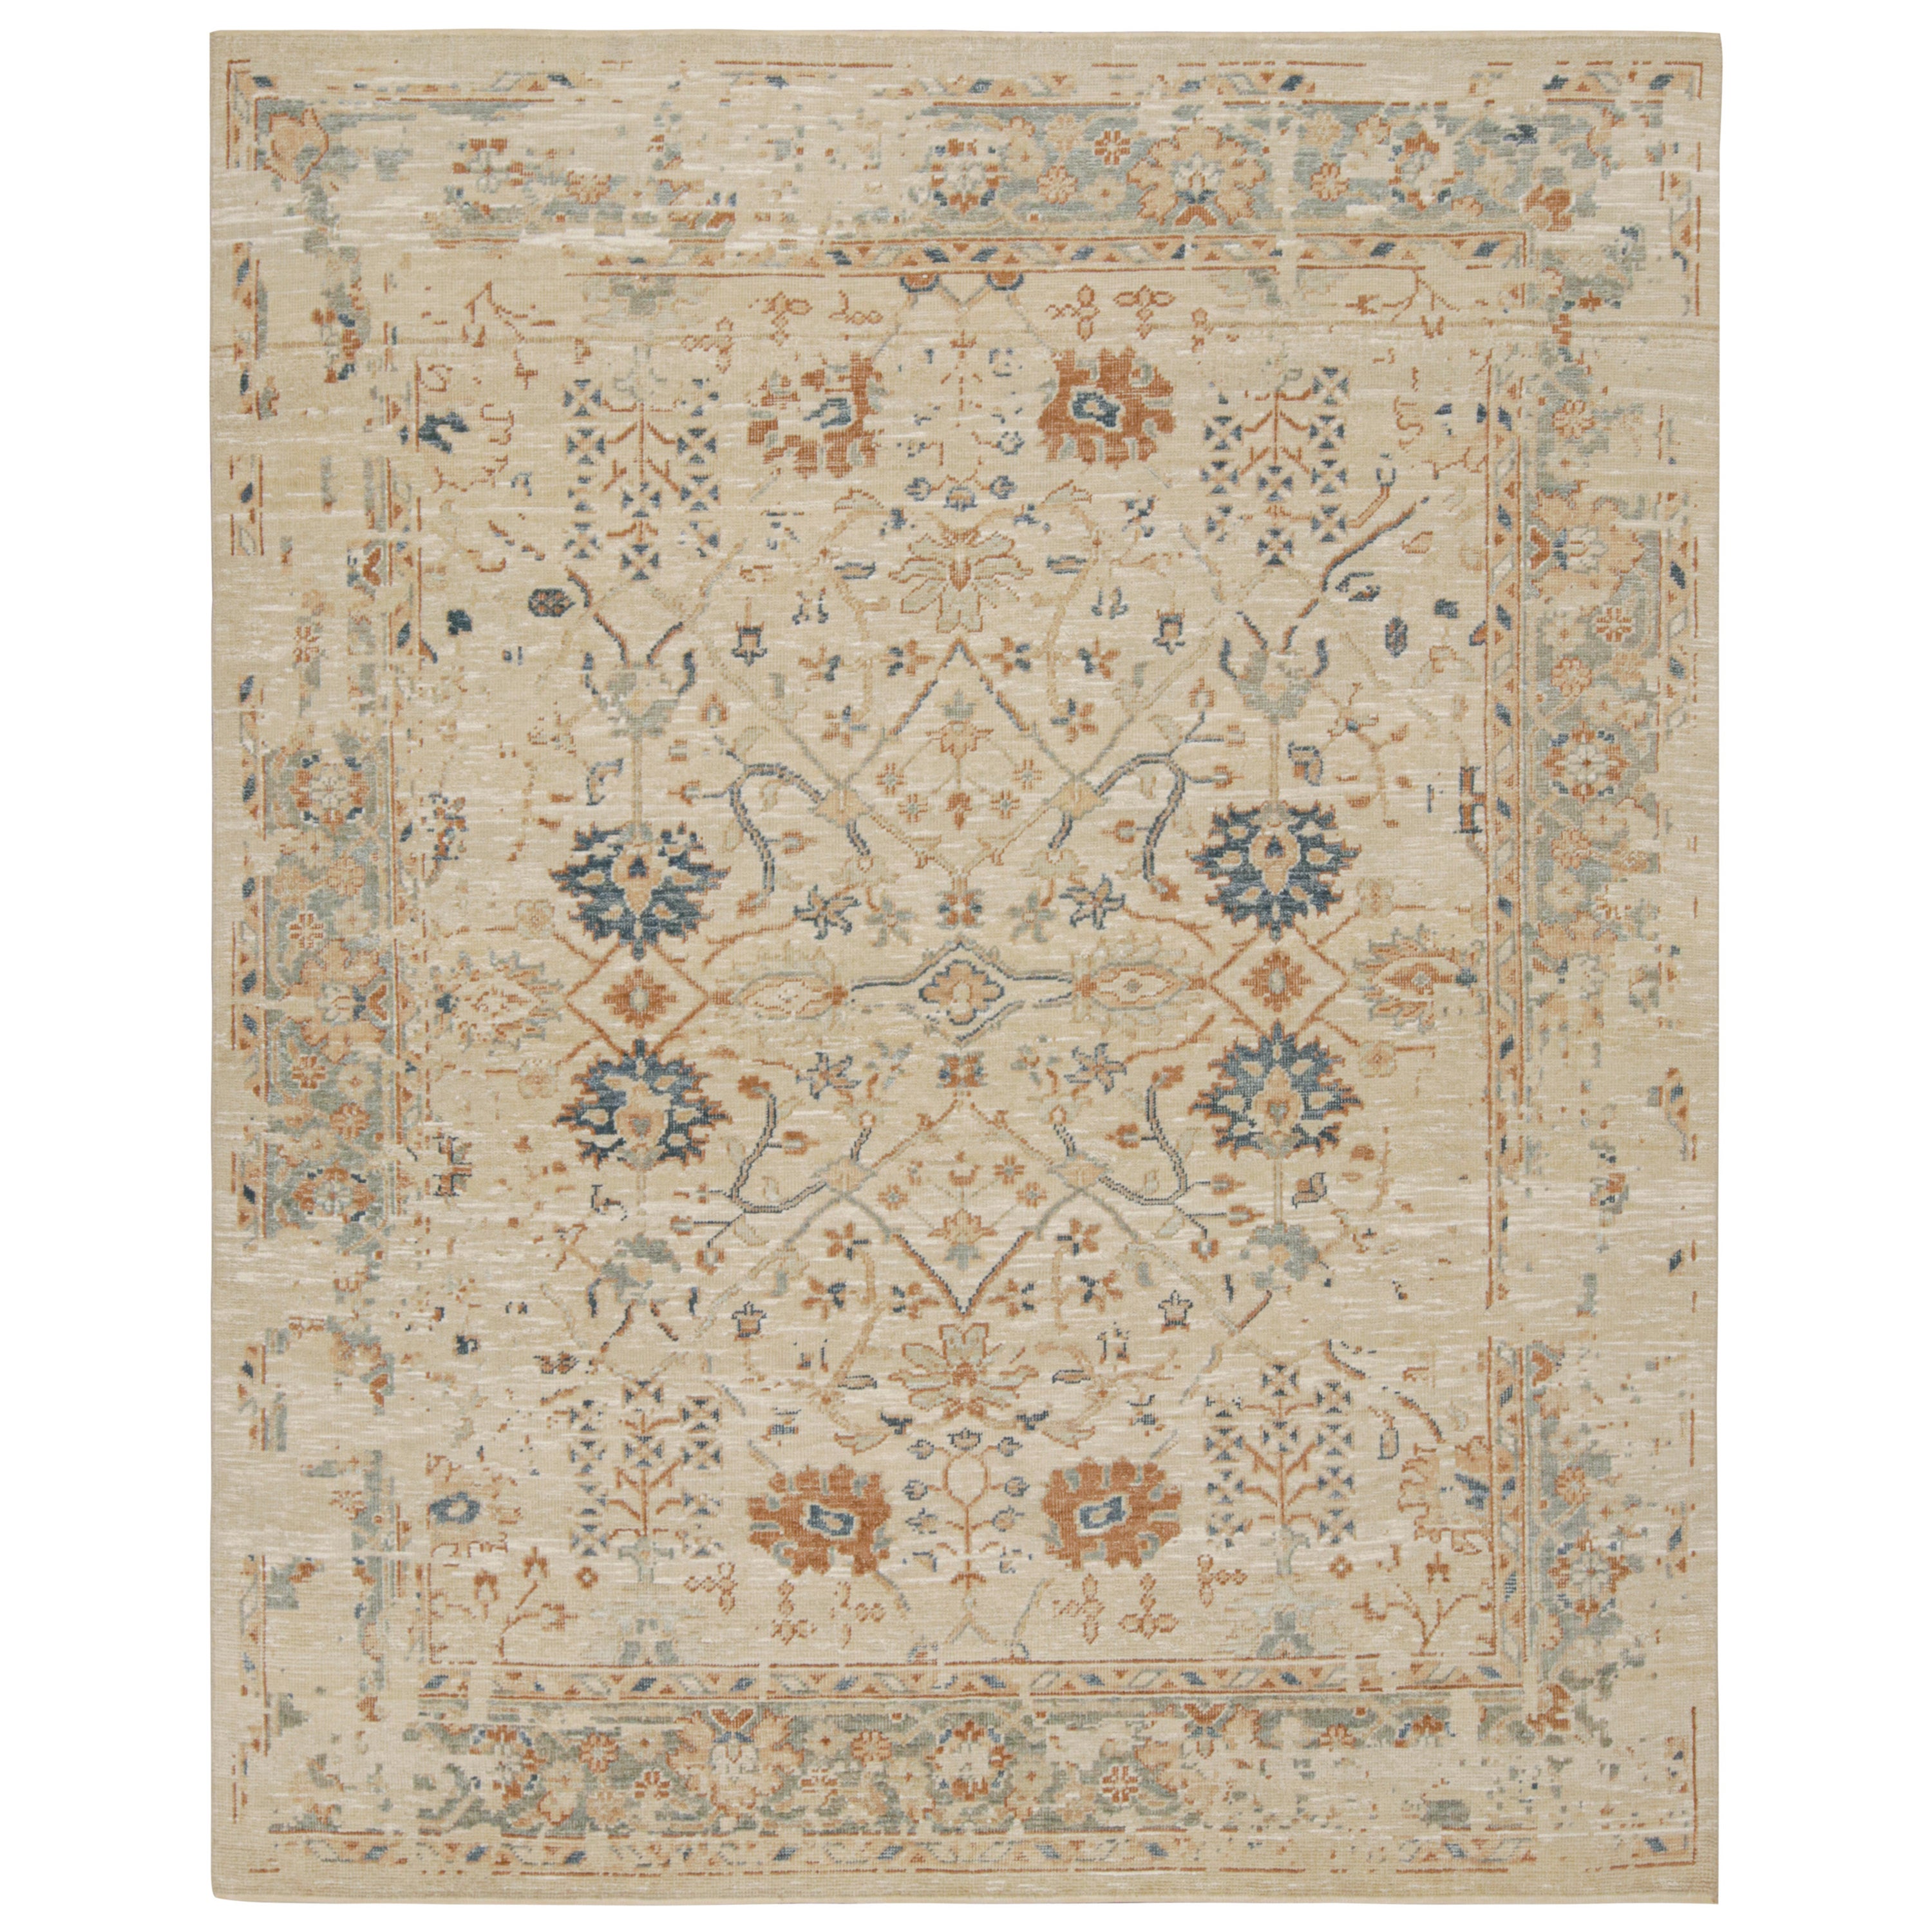 Rug & Kilim's Oushak Style Teppich mit Blumenmustern in Beige, Rost und Marineblau